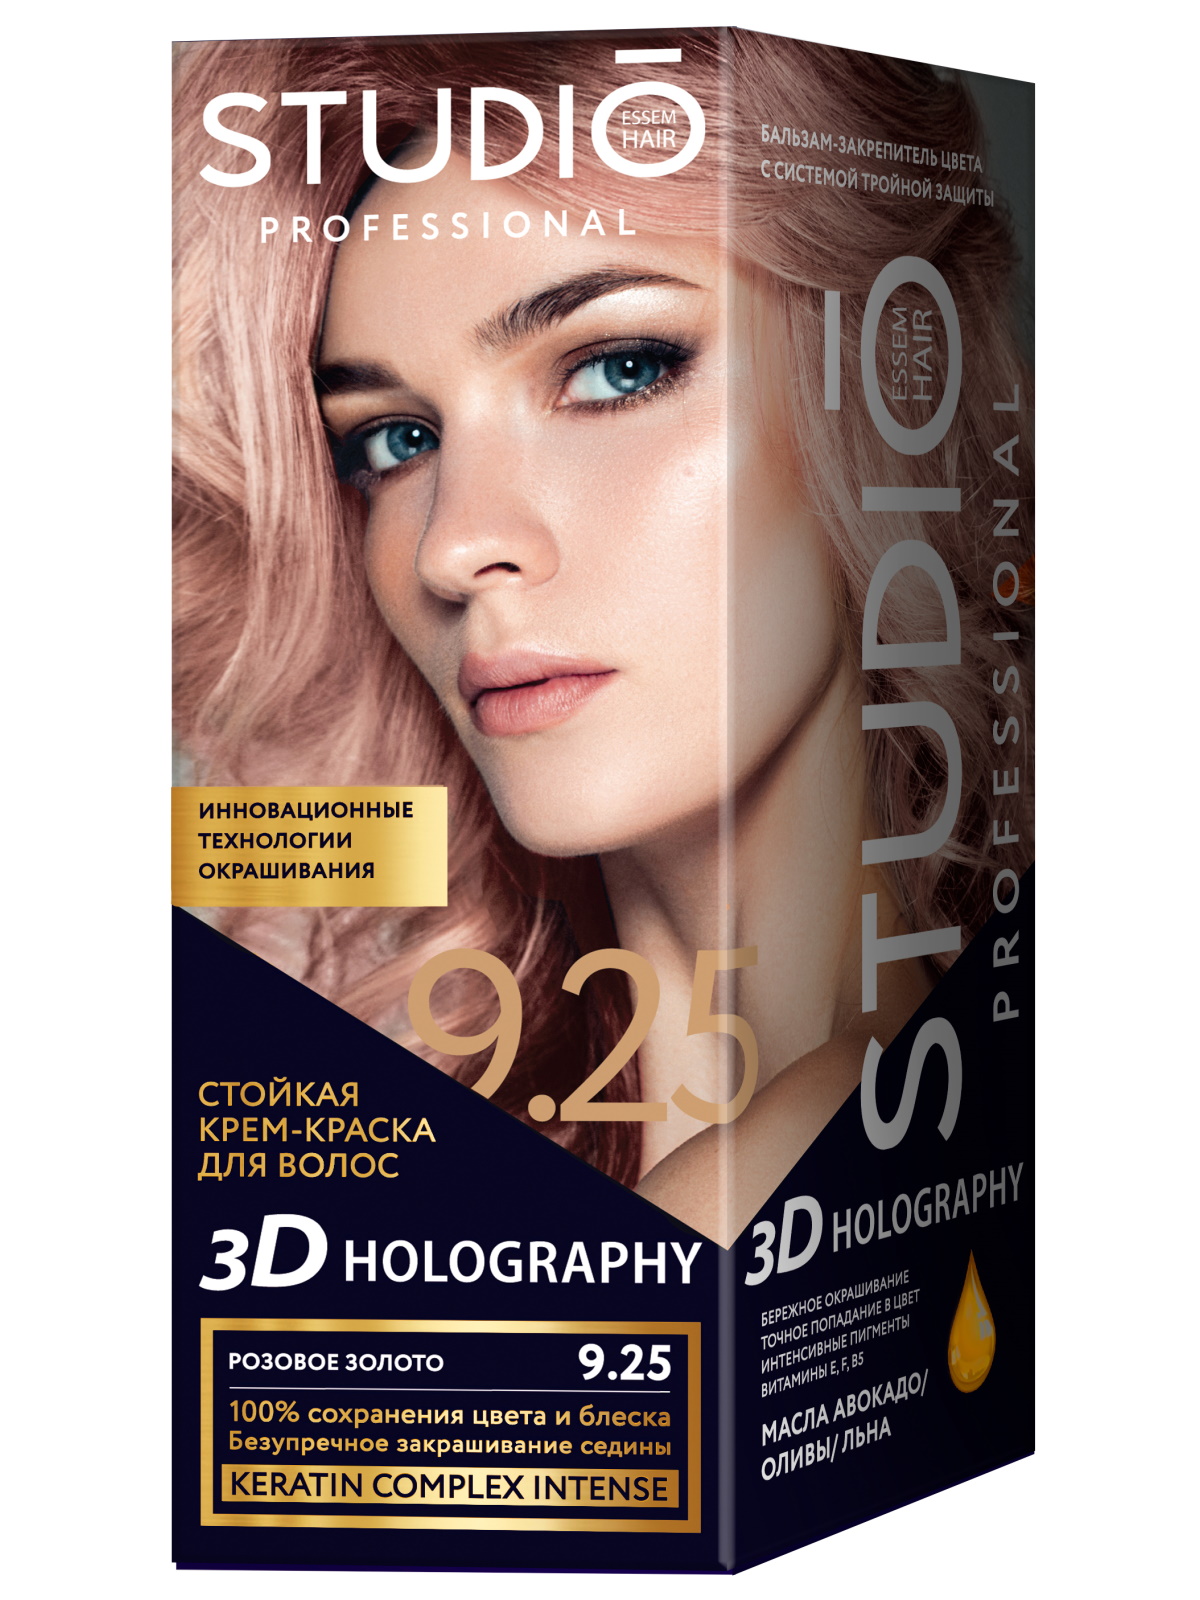 Комплект 3D HOLOGRAPHY для окрашивания STUDIO PROFESSIONAL 9.25 розовое золото 2*50+15 мл комплект 3d holography studio professional 7 35 ярко рыжий 2 50 15 мл